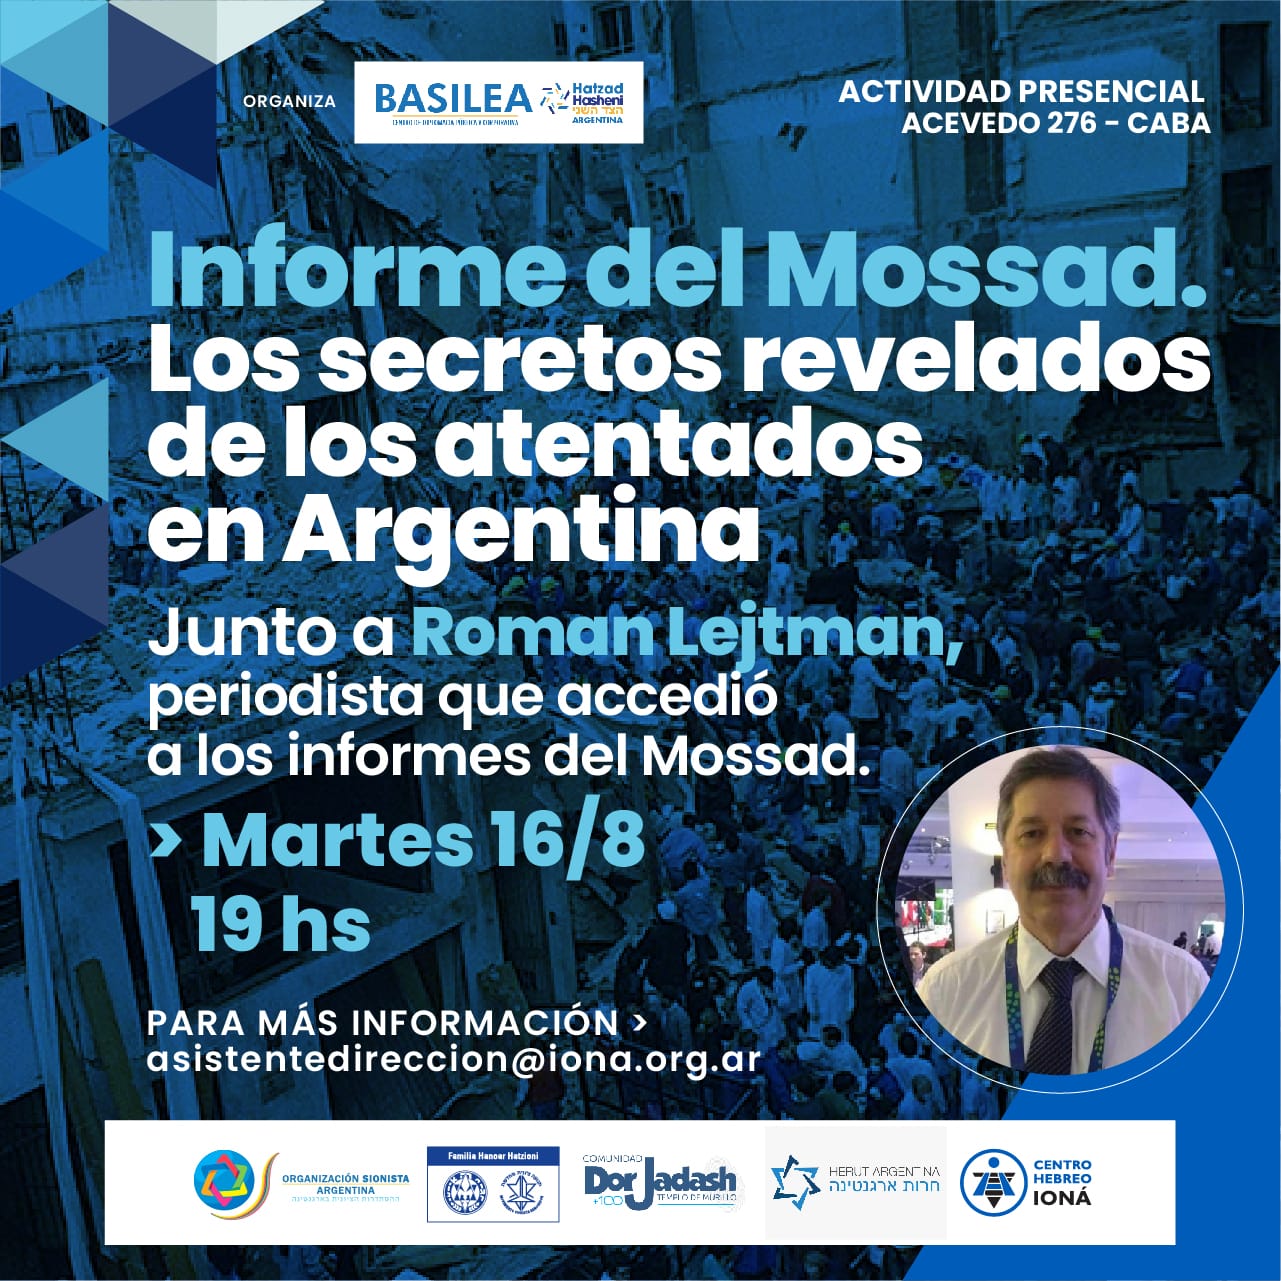 «INFORME DEL MOSSAD. LOS SECRETOS REVELADOS DE LOS ATENTADOS EN ARGENTINA»